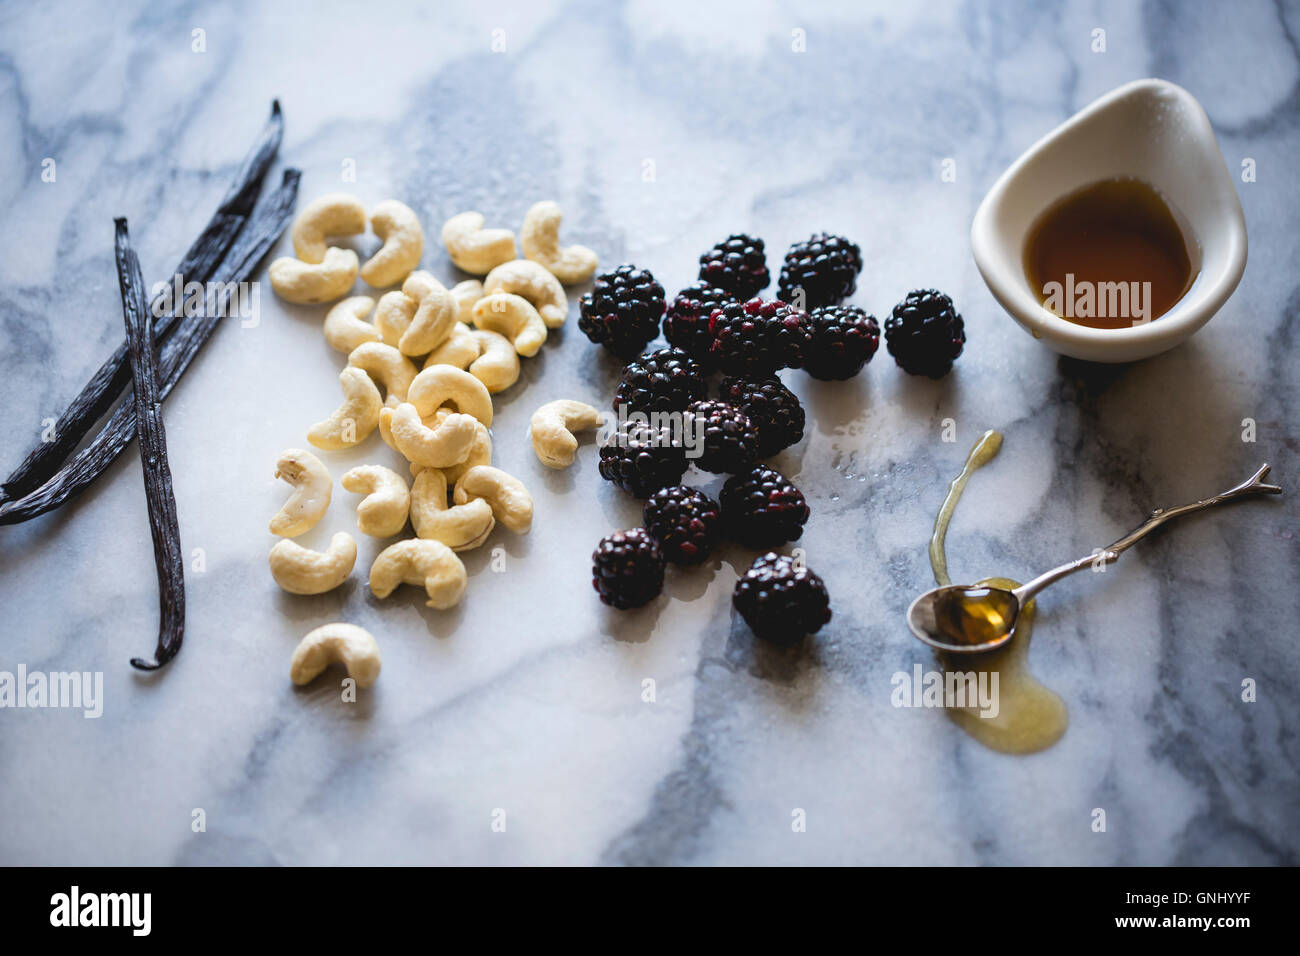 Zutaten auf eine Marmor-Arbeitsplatte. Brombeeren, Cashew-Nüssen, Honig, Vanille. Stockfoto